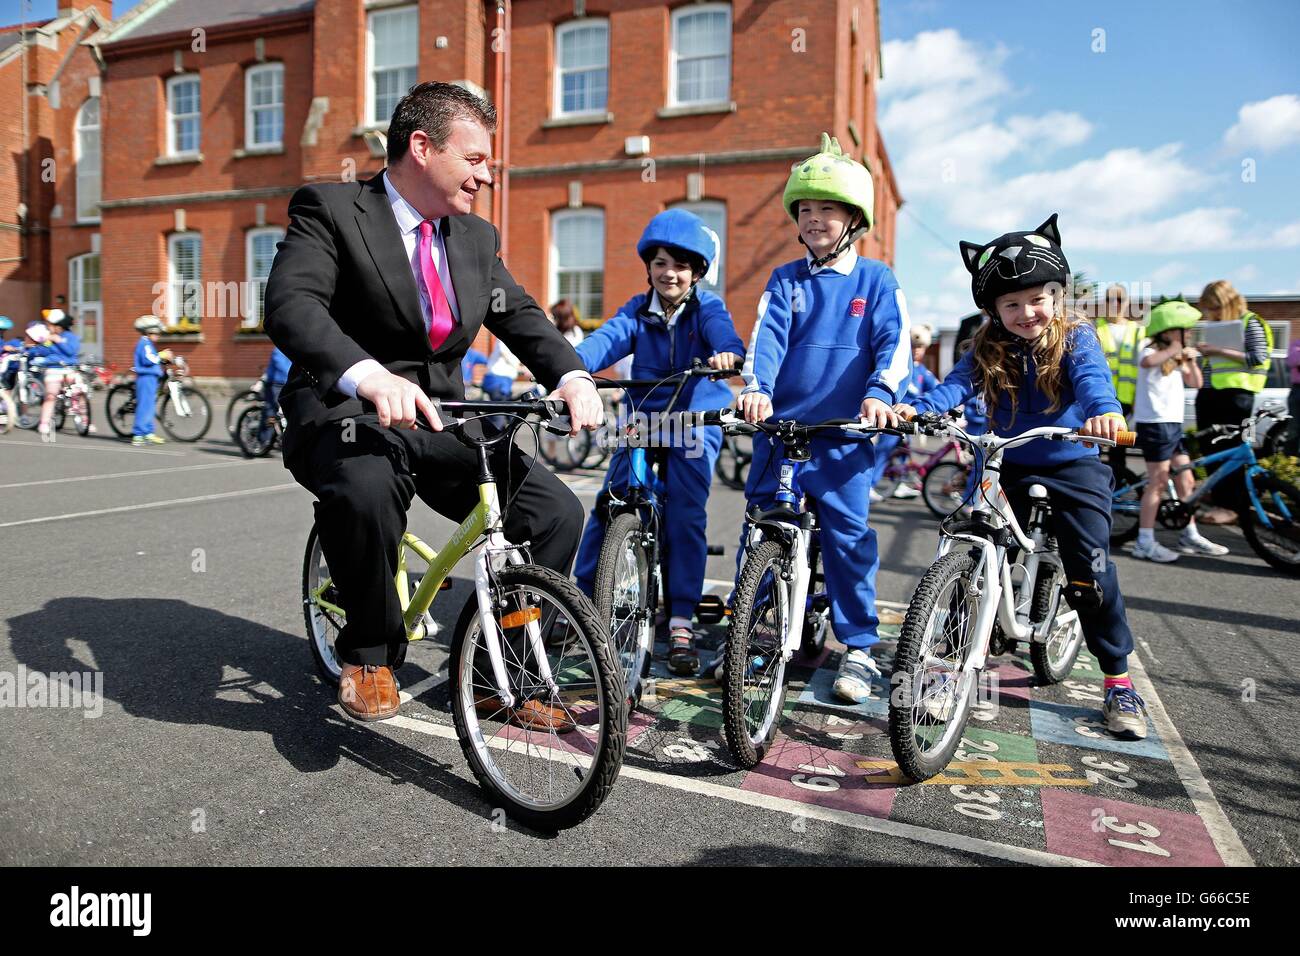 Alan Kelly, Staatsminister im Ministerium für Verkehr, Sport und Tourismus, chattet mit Schulkindern der Carysfort National School in Blackrock, Irland, bei einer Fotowand anlässlich der National Cycle Week. Stockfoto